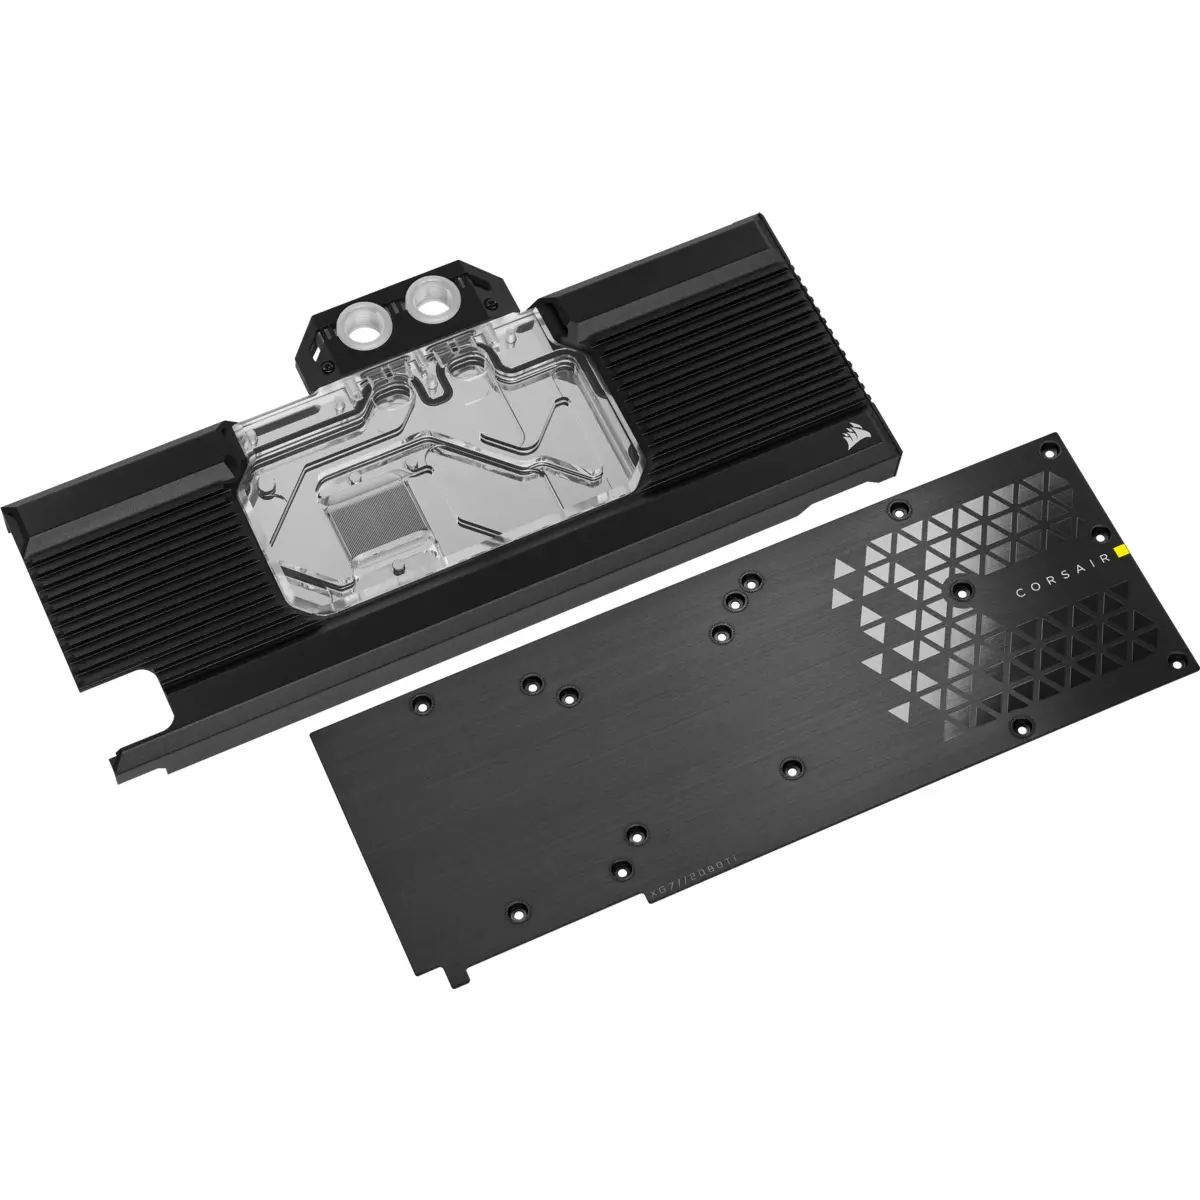 Воден блок за видео карта Corsair Hydro XG7 RGB за RTX 2080 Ti Series Founders Edition - image 1